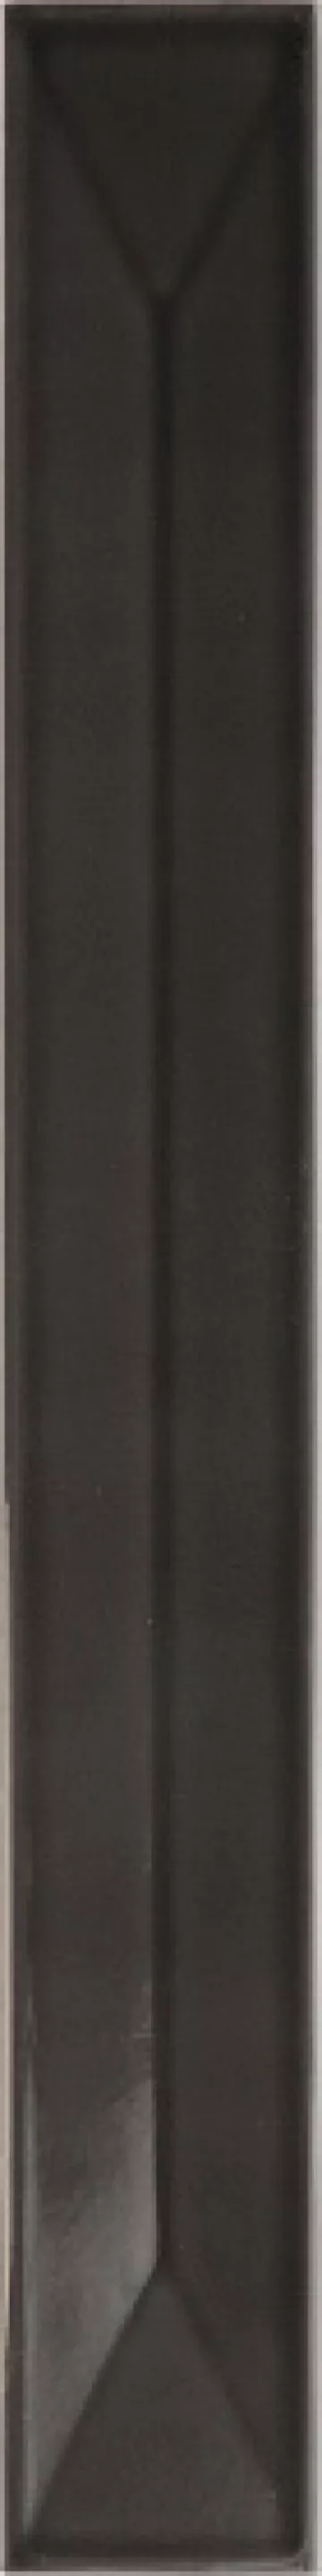 Плитка настенная 40x5 Equipe Vitral Axis Black 40x5 31158